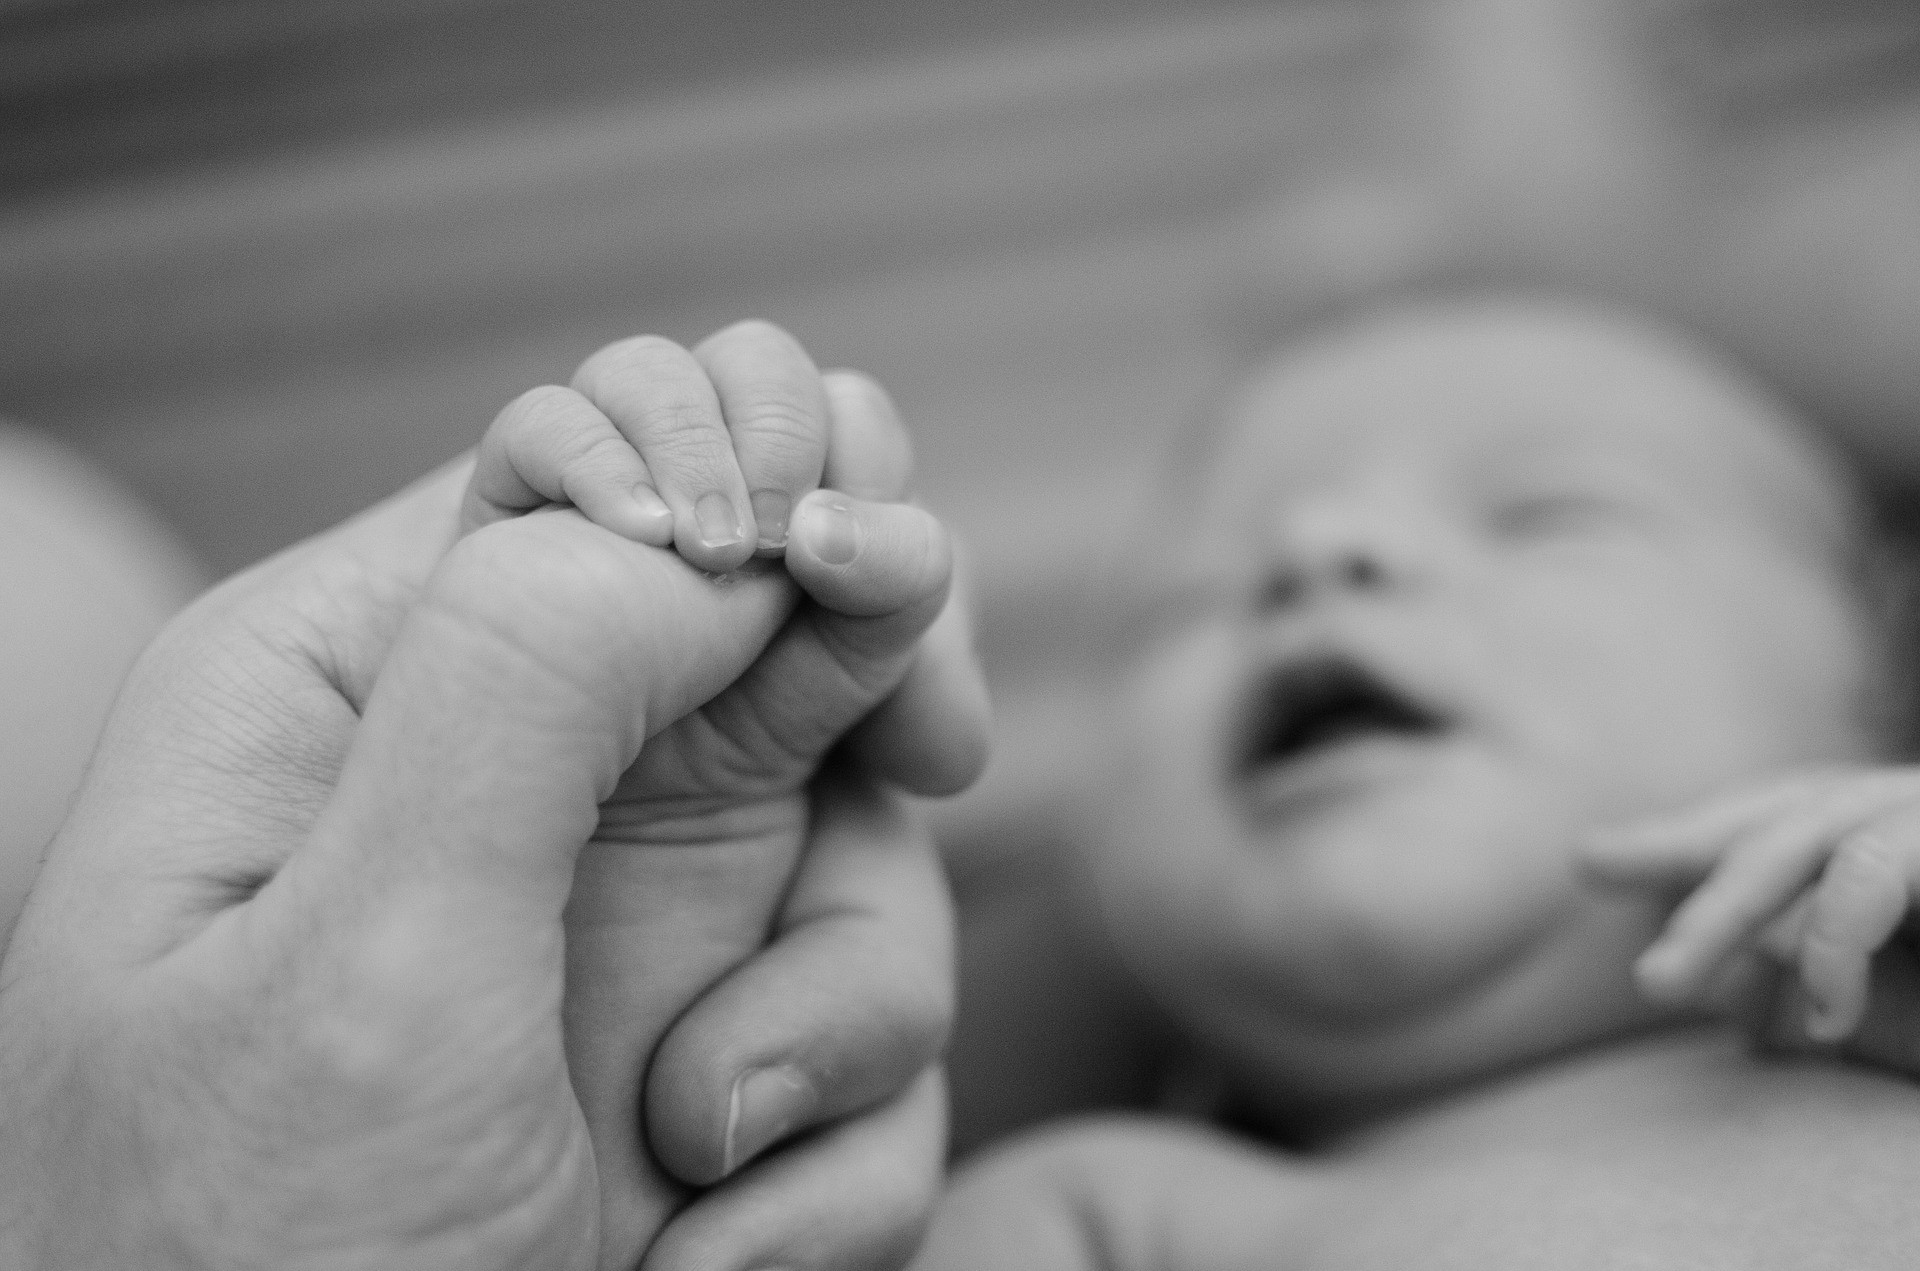 En los próximos días, nacerán otros 2 bebés gestados mediante FIV